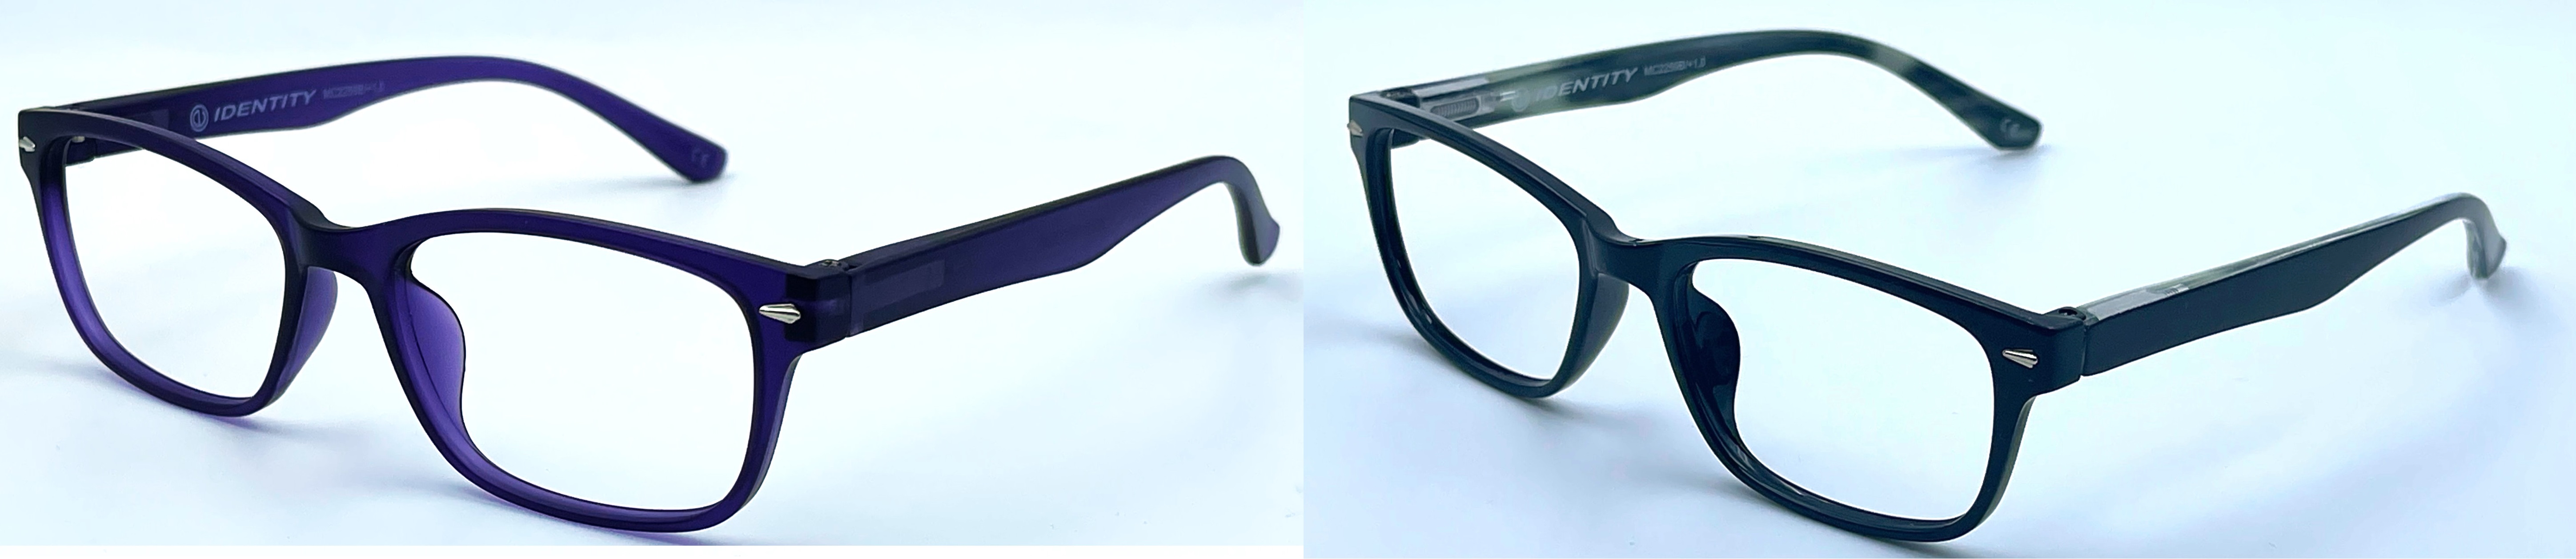 Dioptrické čtecí brýle MC2259B/0,0. S pouzdrem.  -